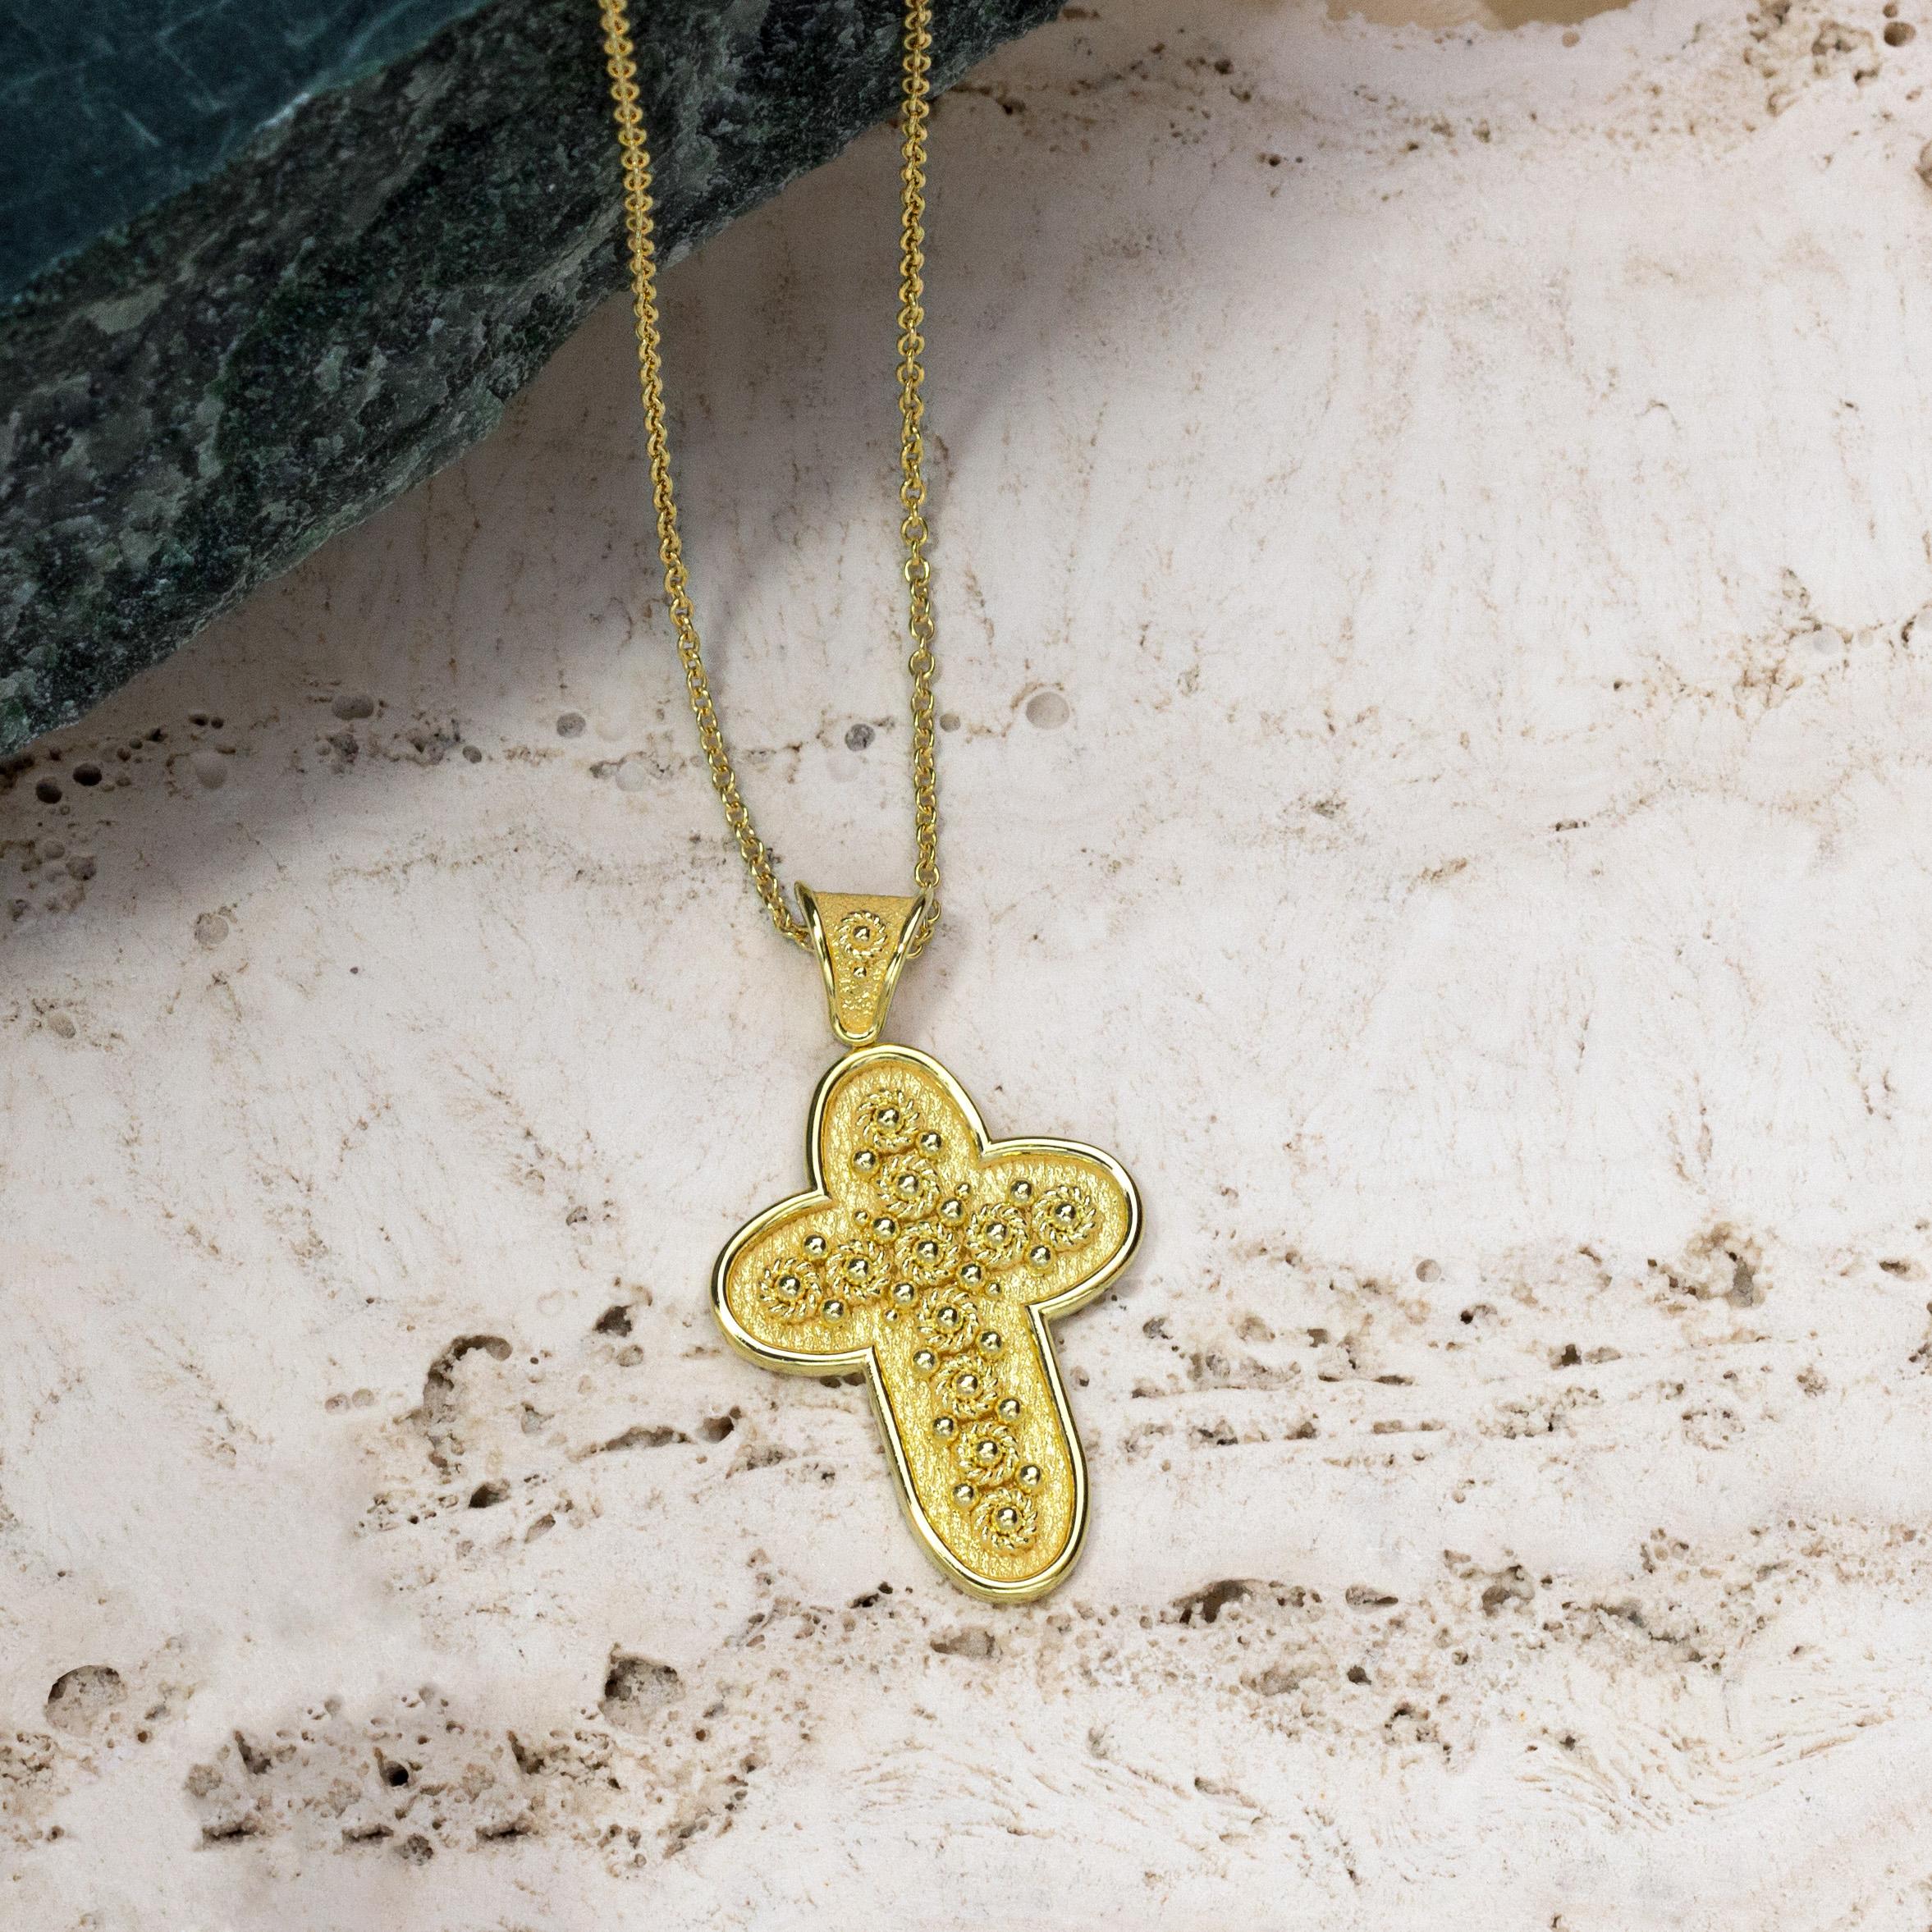 Portez un pendentif en forme de croix en or avec des motifs circulaires complexes, tissés avec une corde dorée et ornés de délicates granulations - un symbole divin de la foi et de la beauté intemporelle.

100% fait à la main dans notre